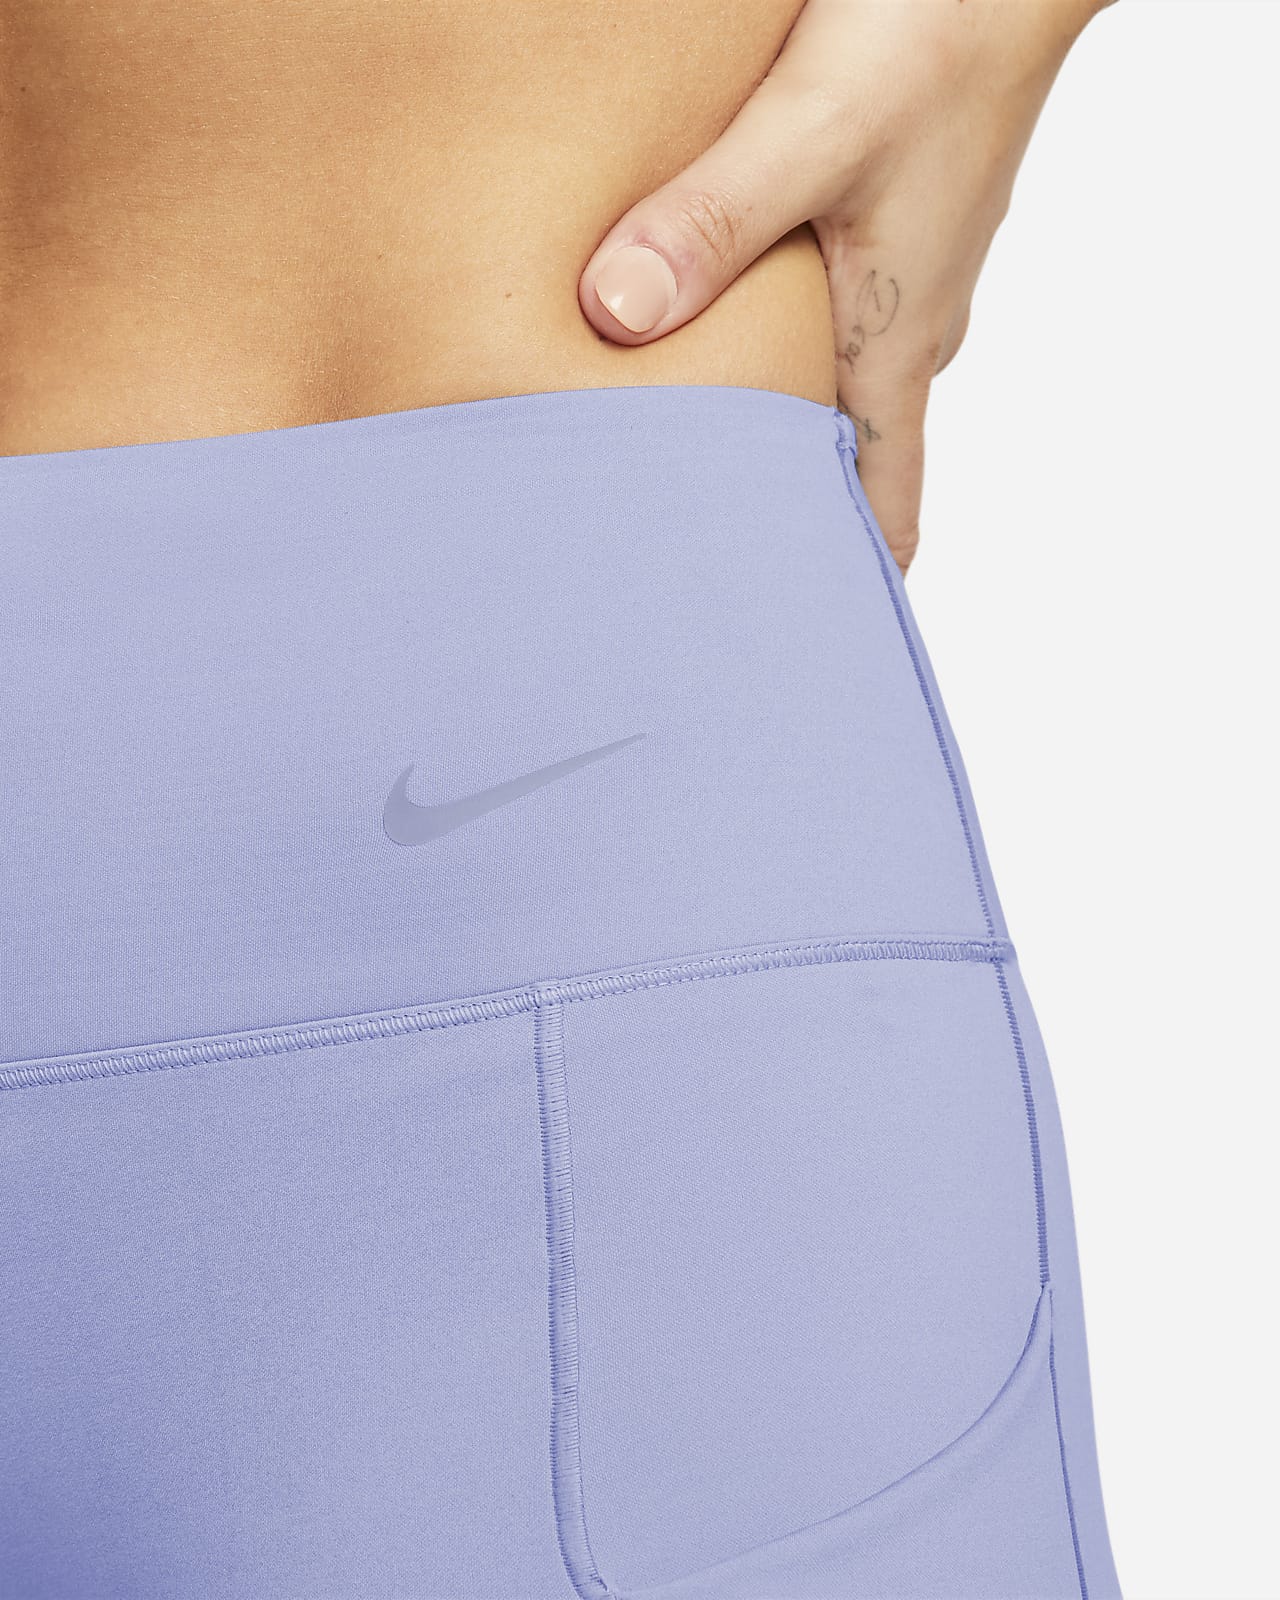 Leggings a todo o comprimento de cintura normal e suporte firme com bolsos  Nike Go para mulher